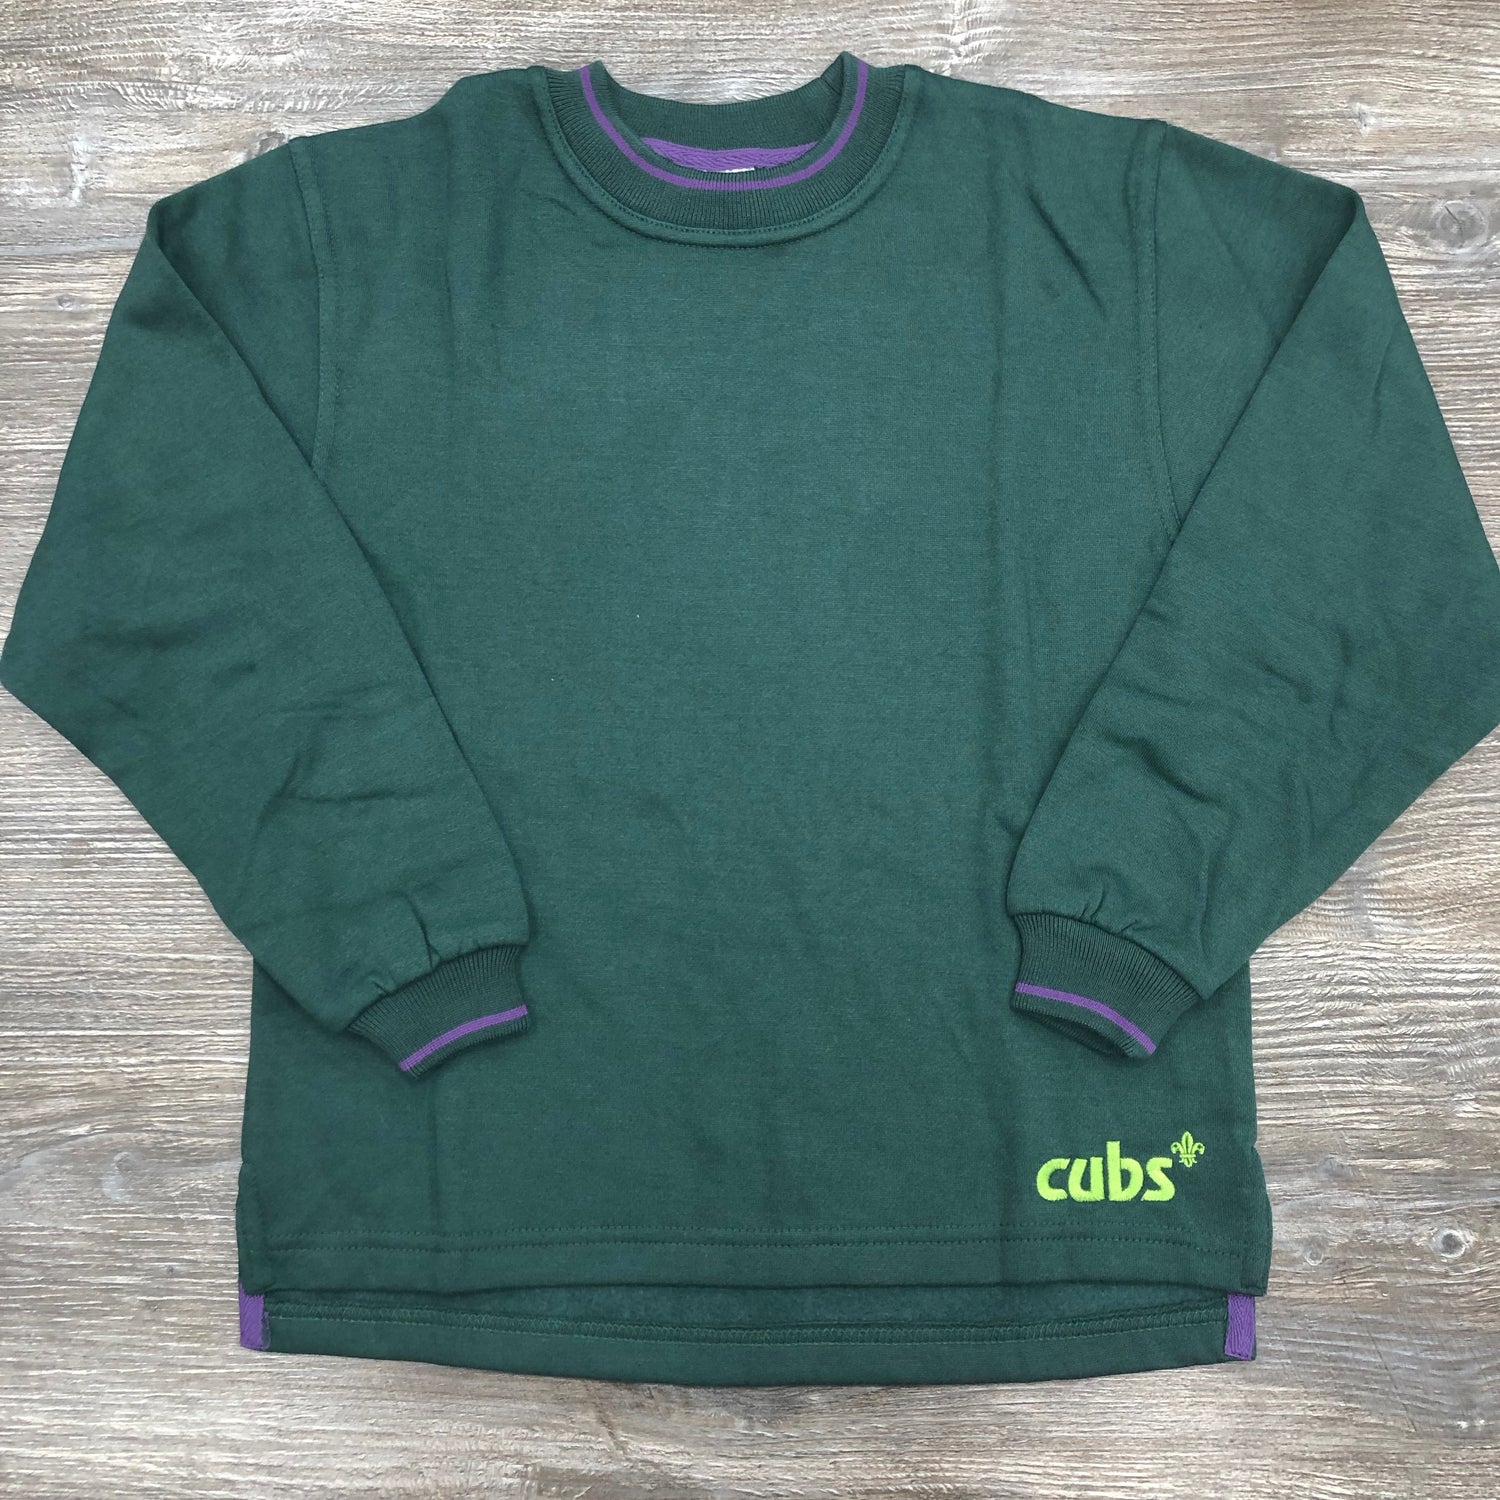 Cubs Green Sweatshirt